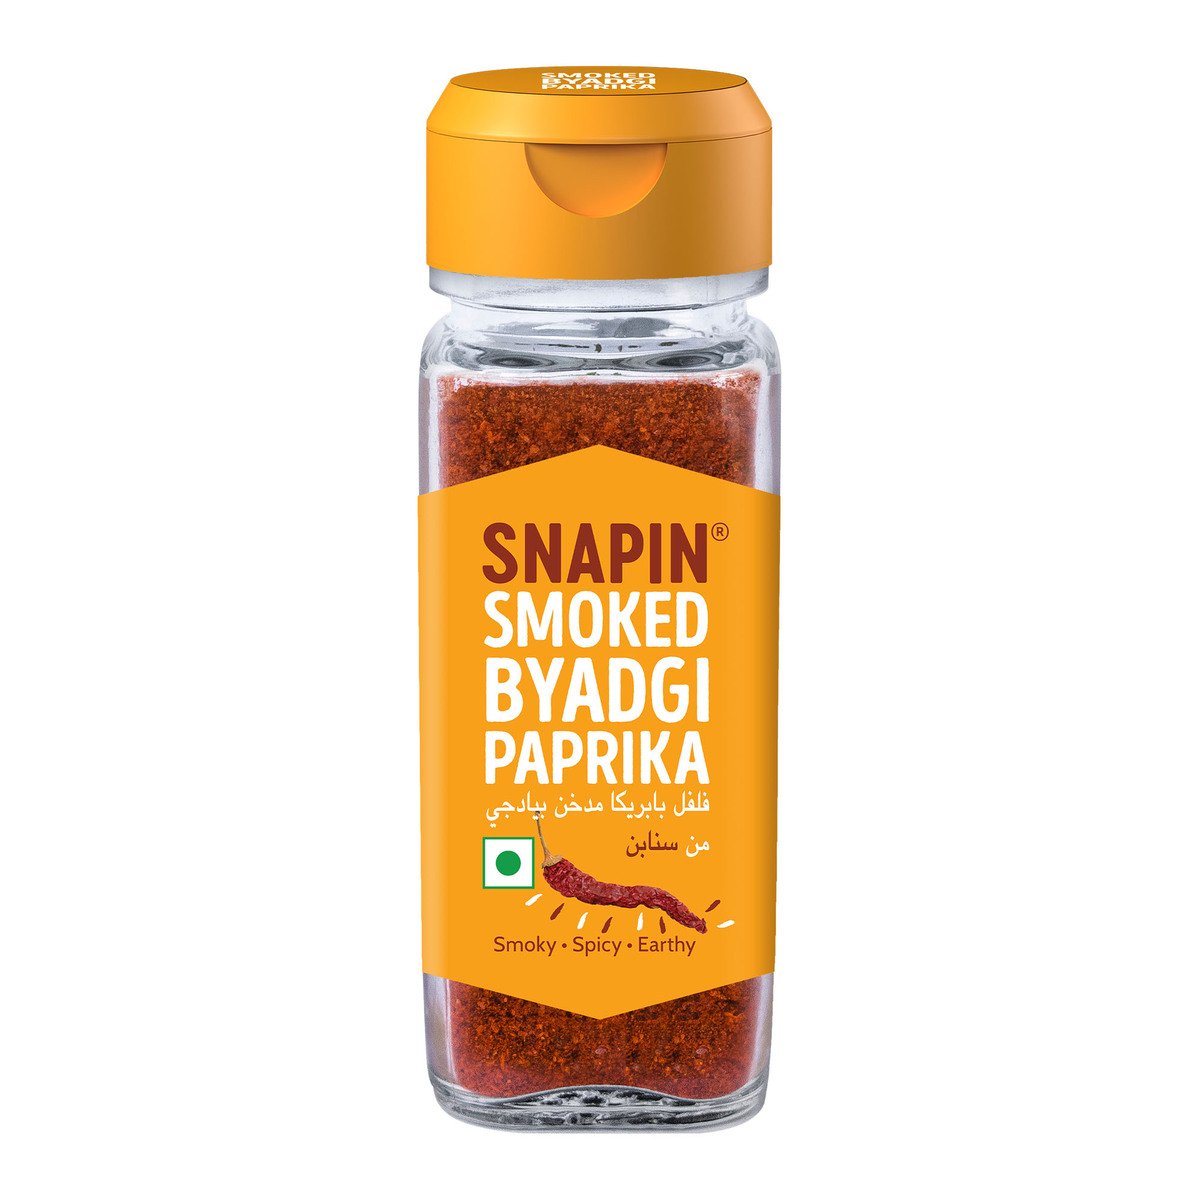 Snapin Smoked Byadgi Paprika 40 g